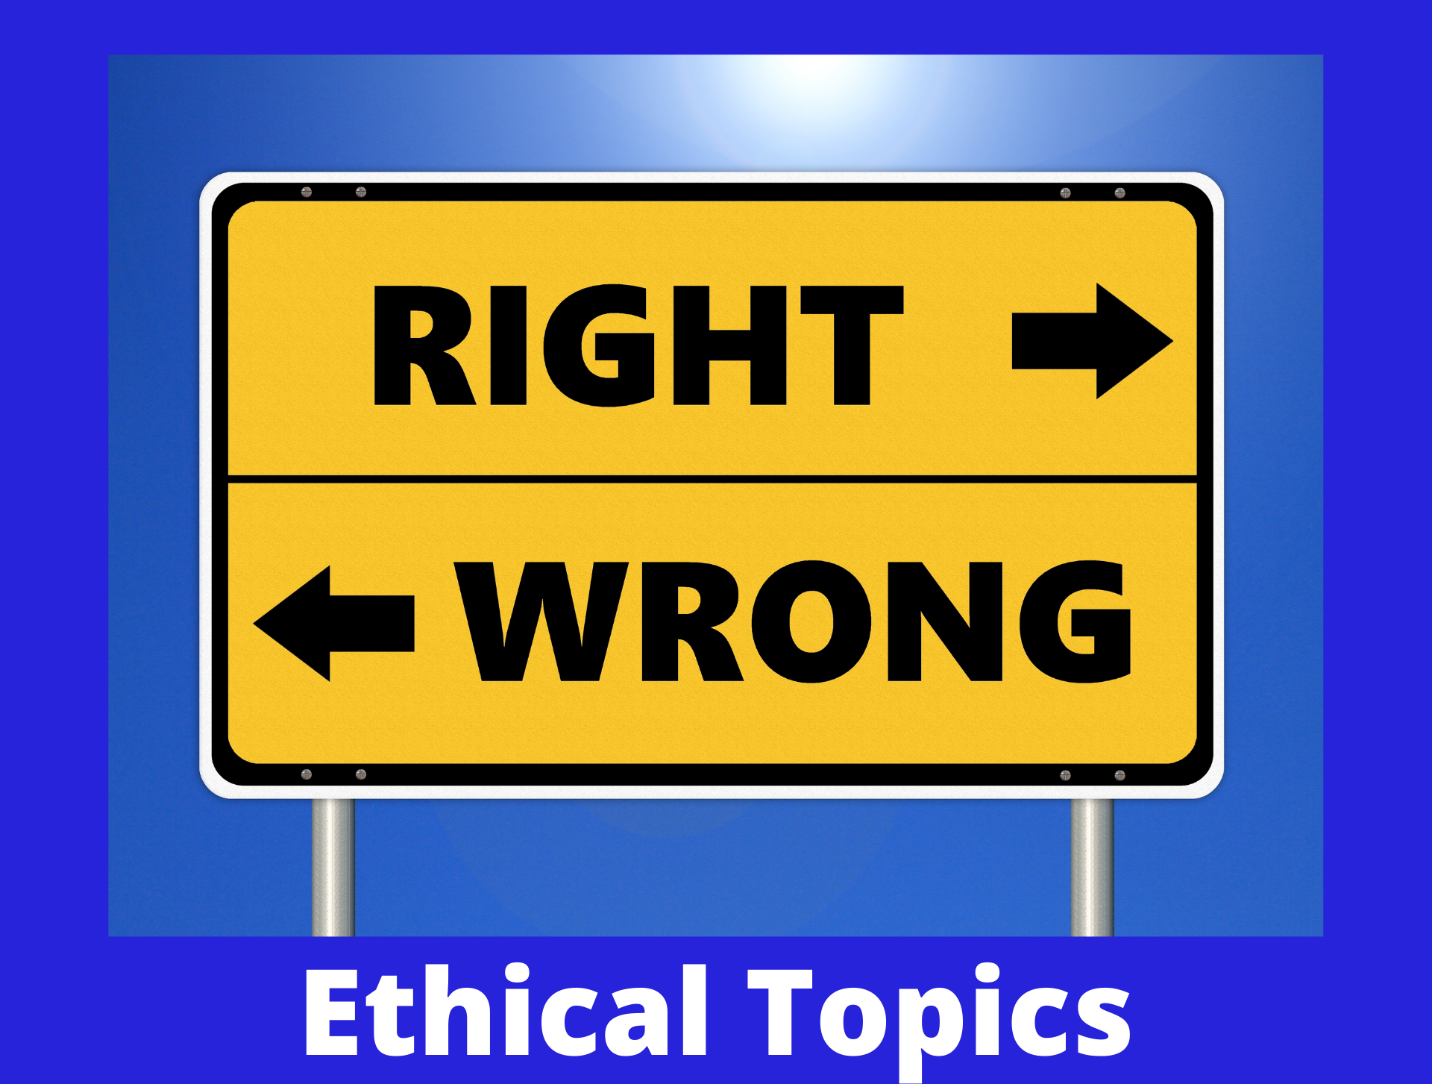 Ethical topics